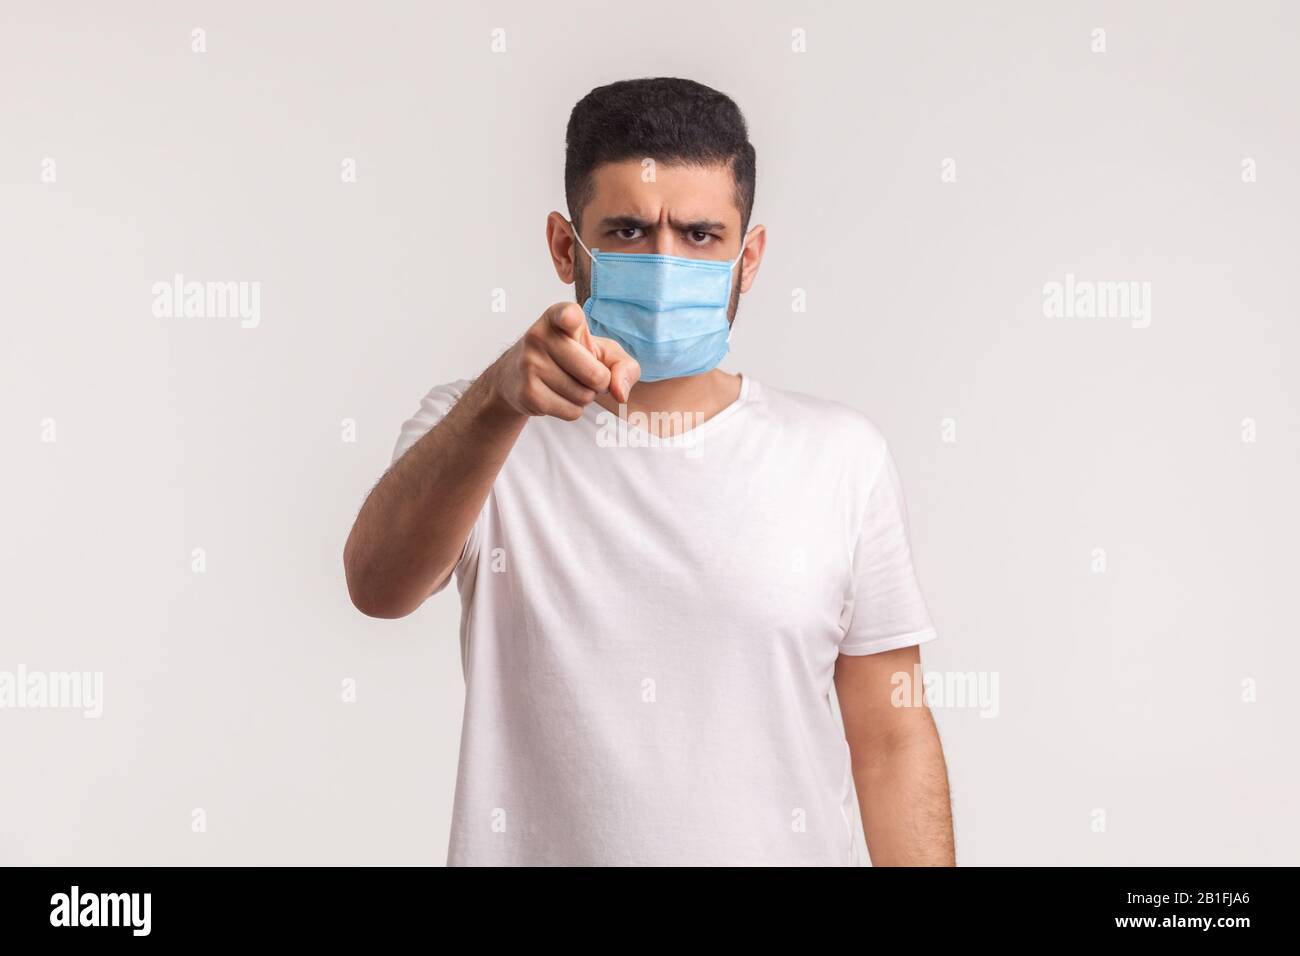 Ehi, usi i filtri contro l'influenza nuova! Uomo che punta alla fotocamera e indossa maschera igienica per prevenire infezioni da coronavirus, malattie respiratorie Foto Stock